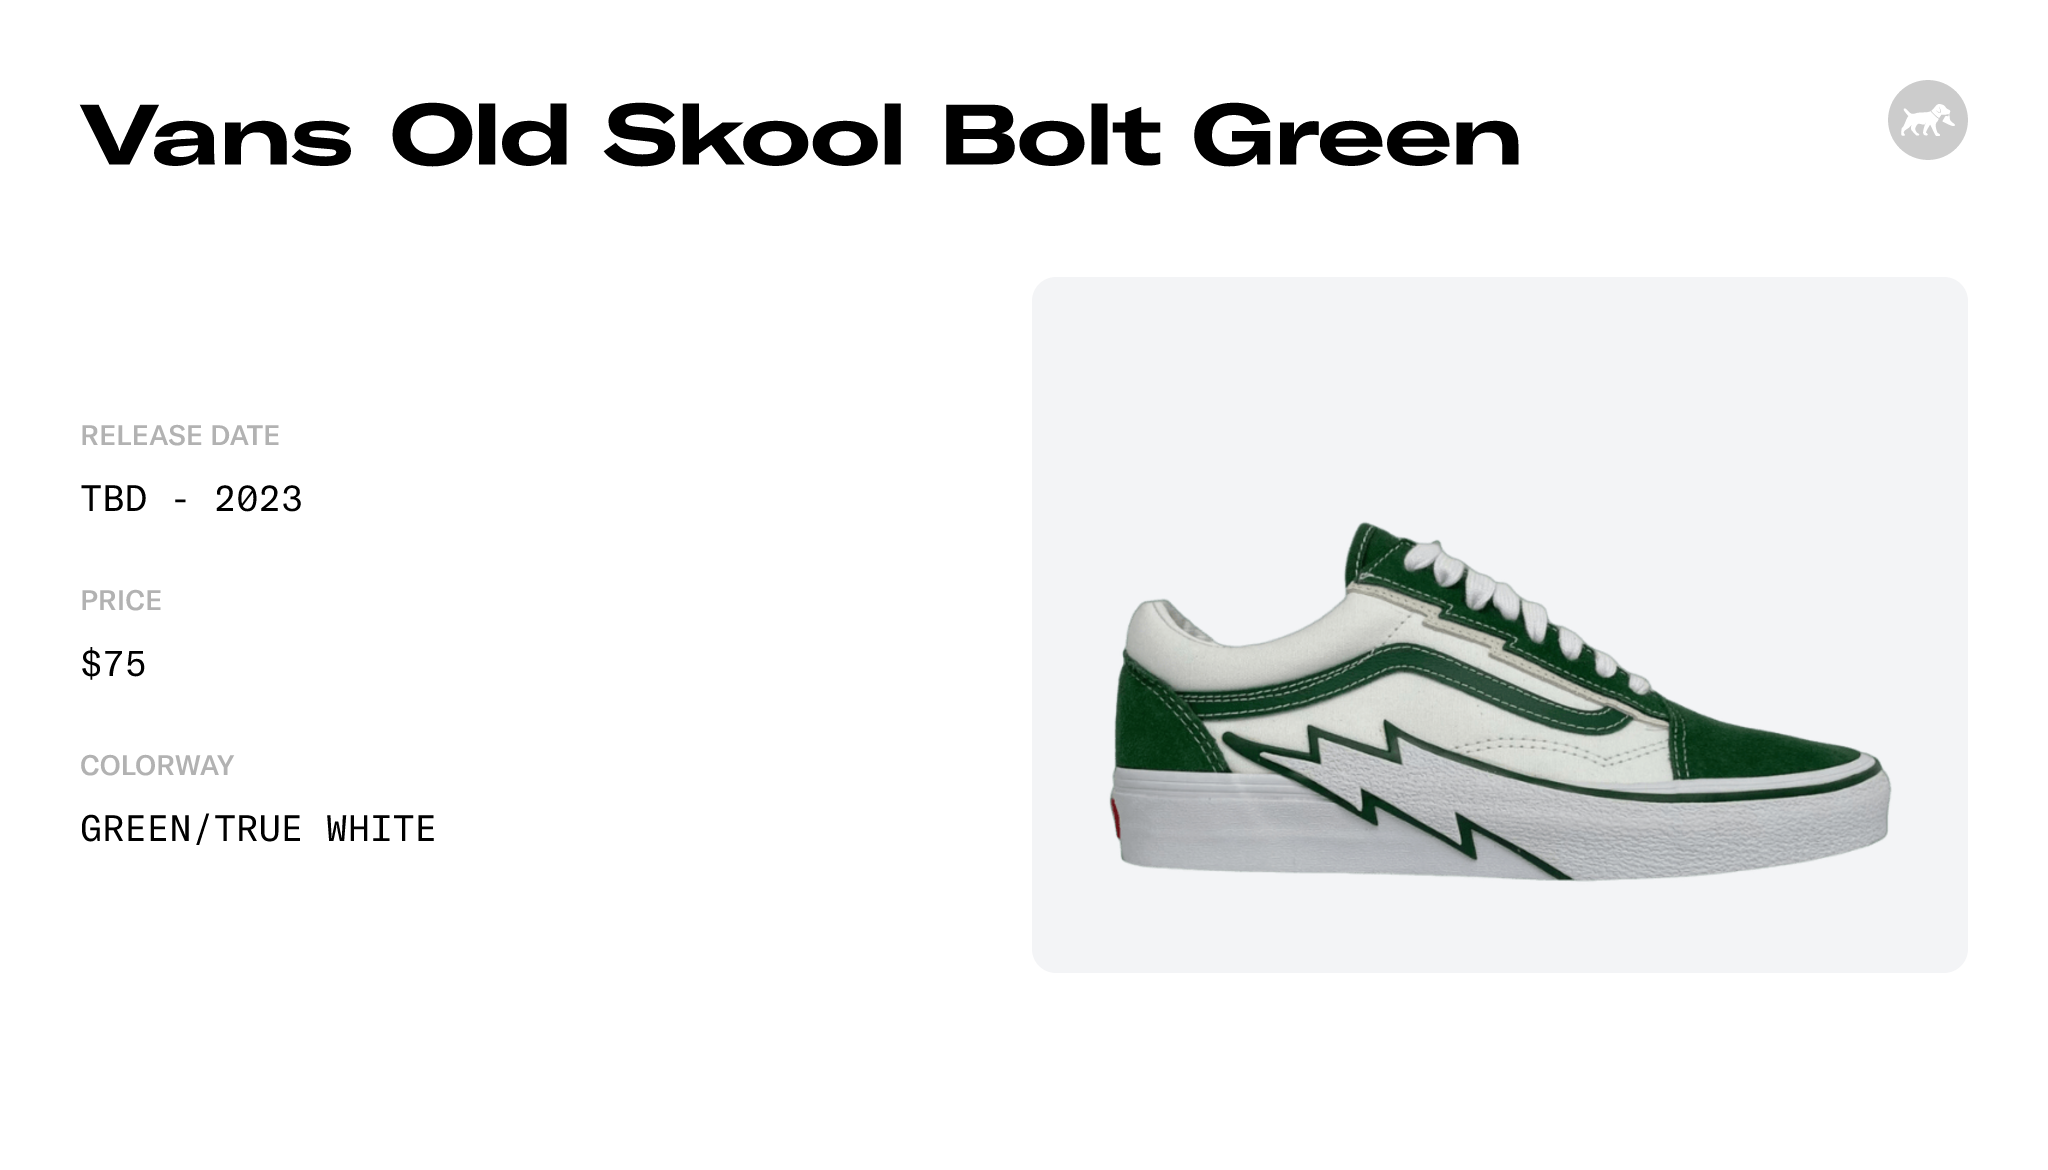 Vans Old Skool Bolt White/Green Release Date